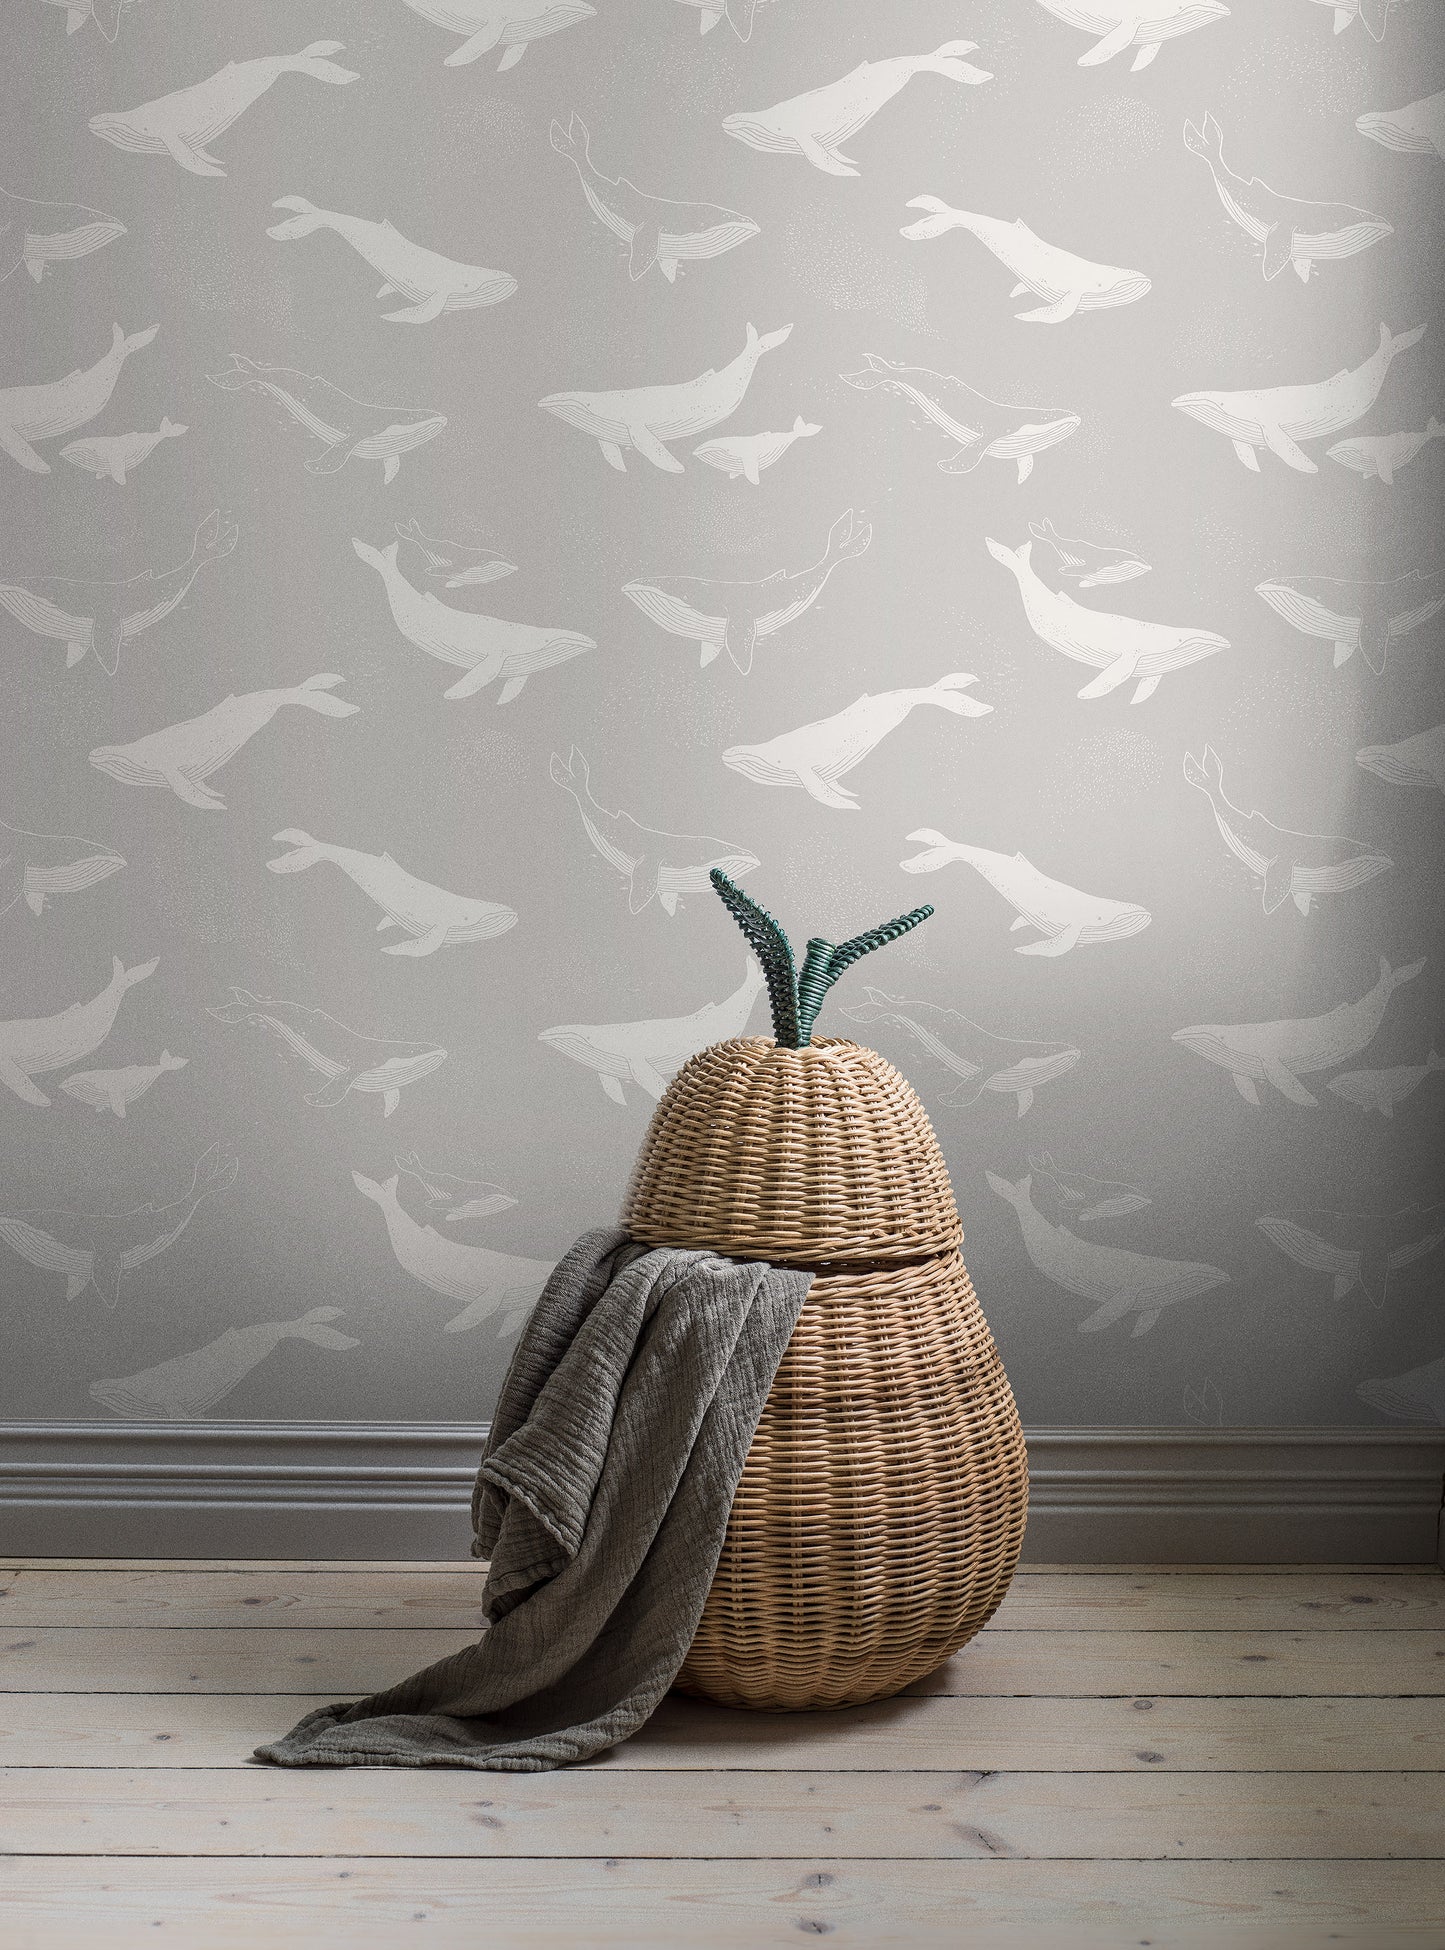 Borastapeter Wallpaper - Whales - Grey